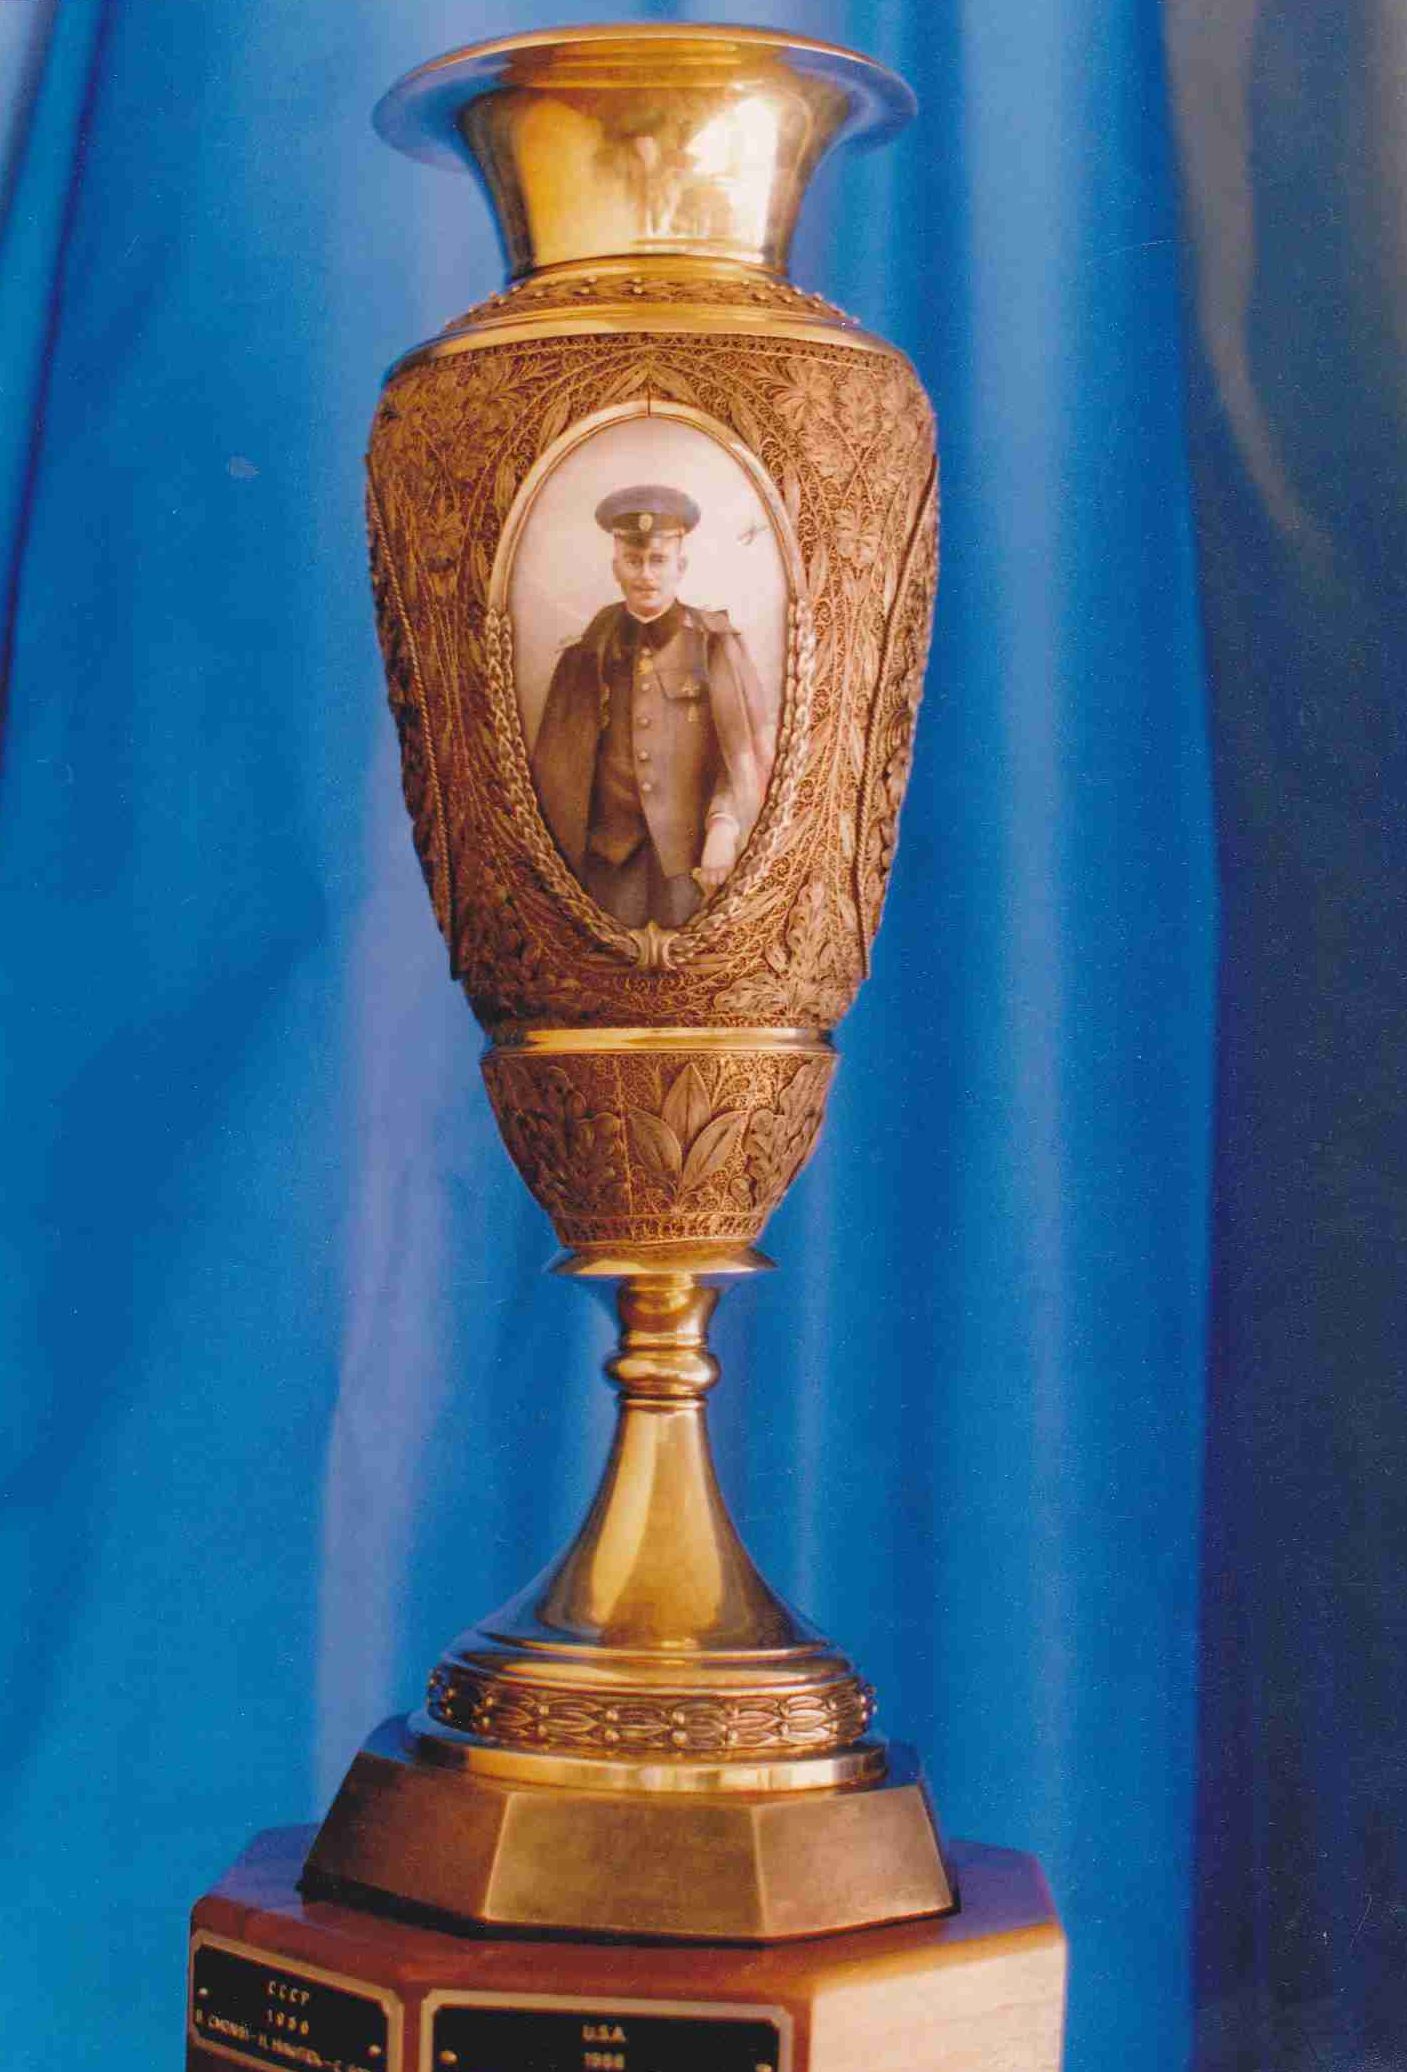 A műrepülők örökös trófeája, a Nyesztyerov-kupa